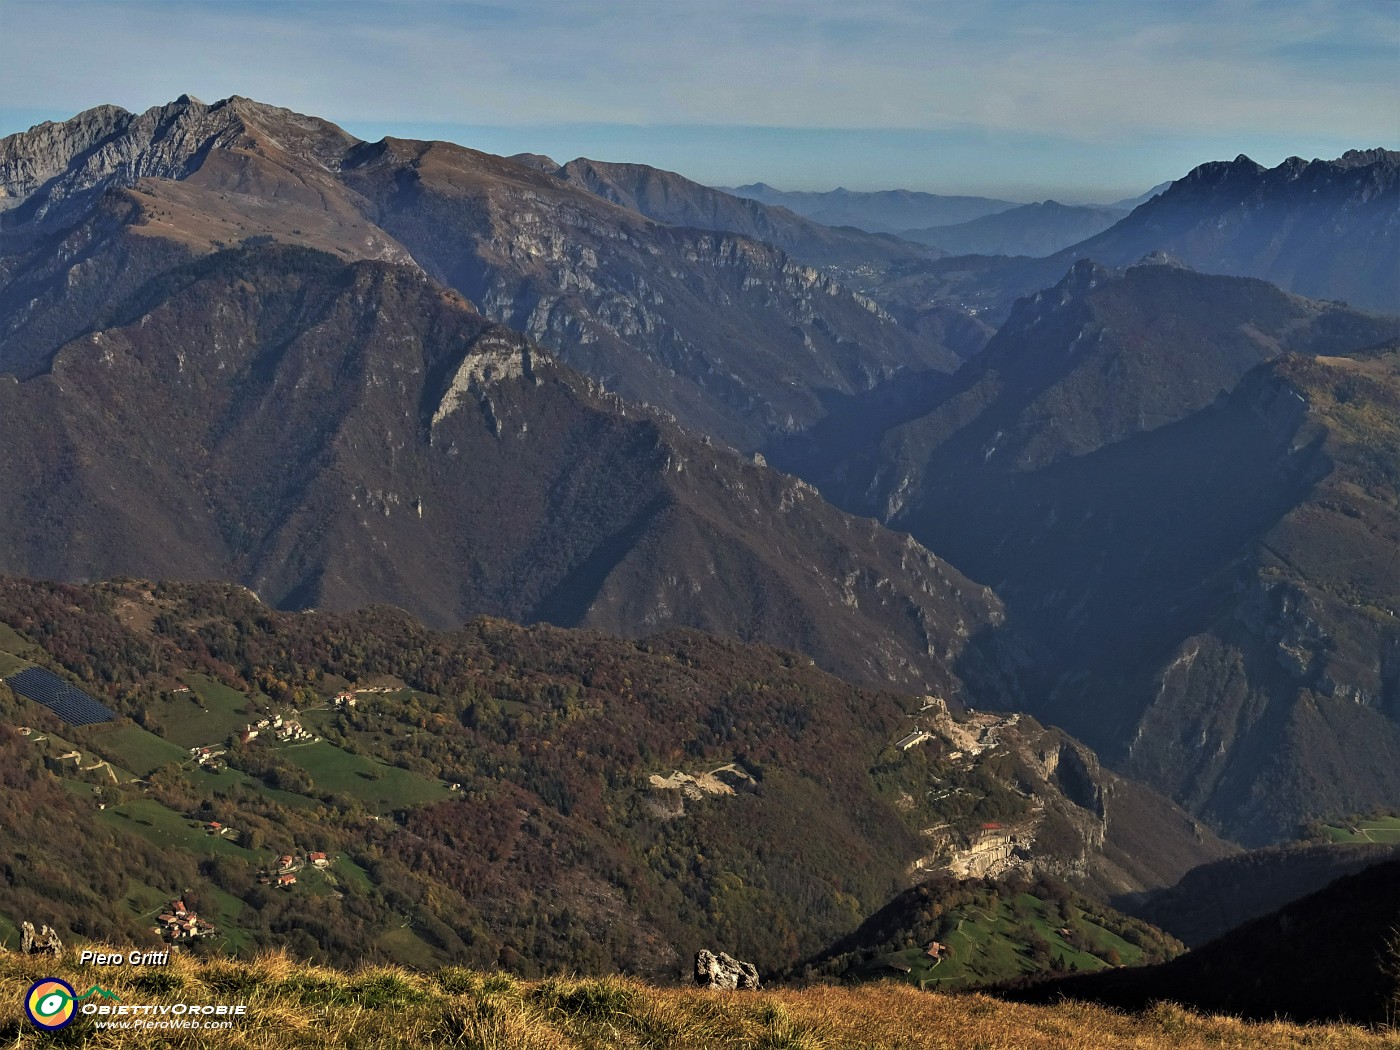 78 Dal verde pianoro della Baita Venturosa bella vista su Cespedosio-Val Parina-Menna a sx ed Alben-Castello-Vaccareggio a dx.JPG